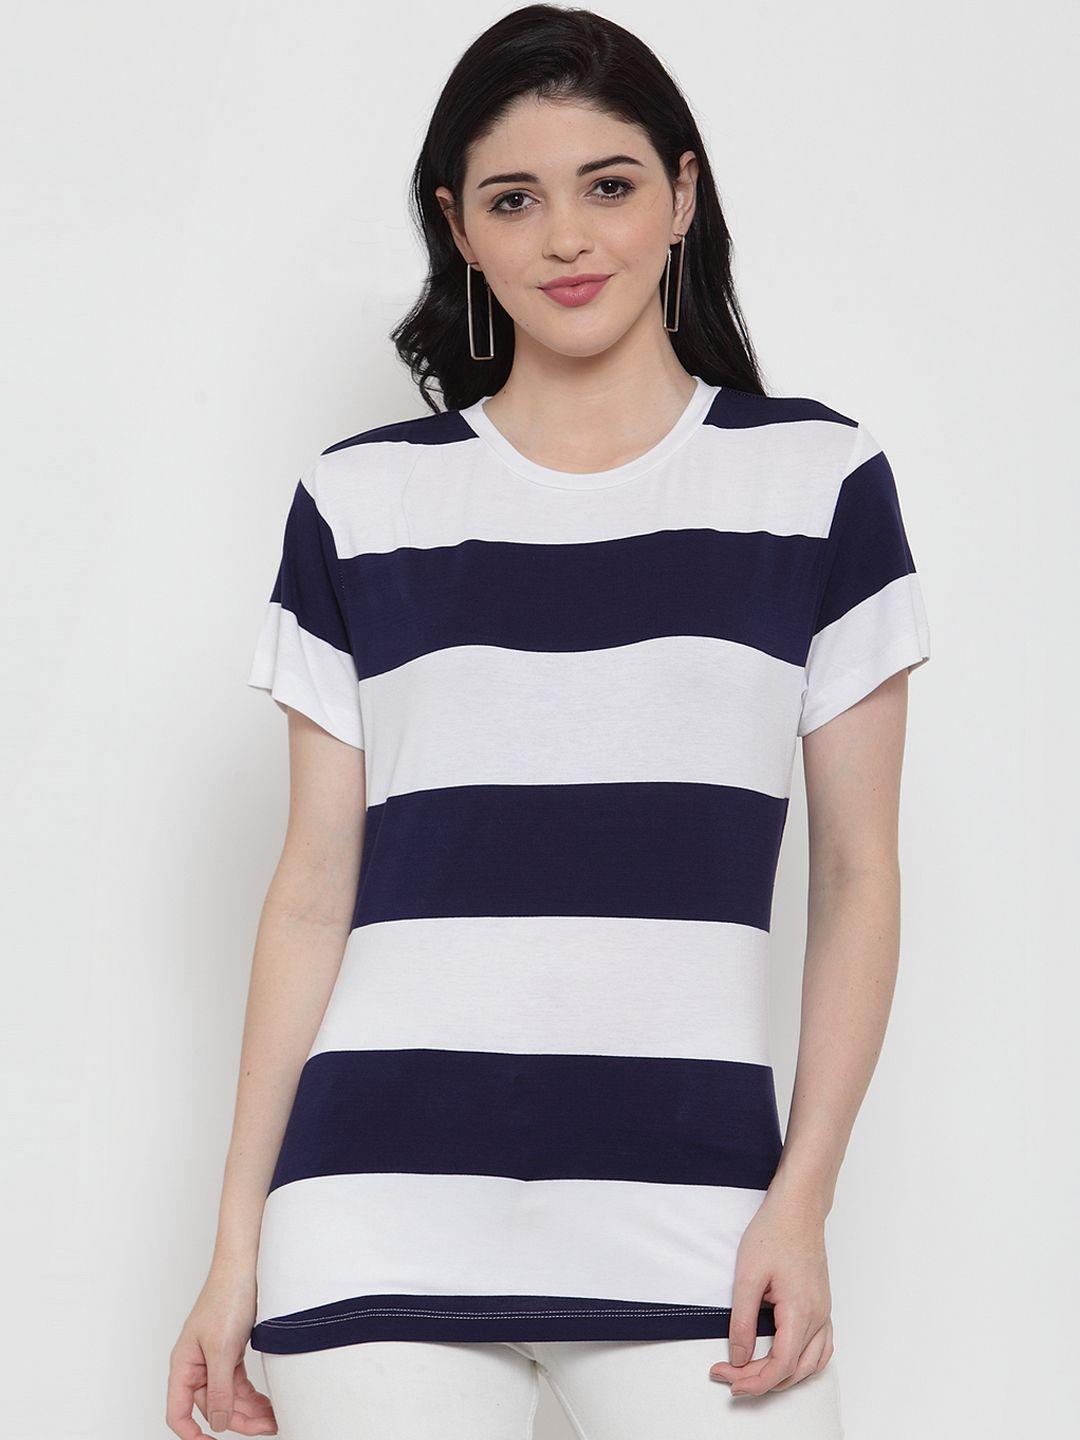 door74 women navy blue & white striped round neck t-shirt